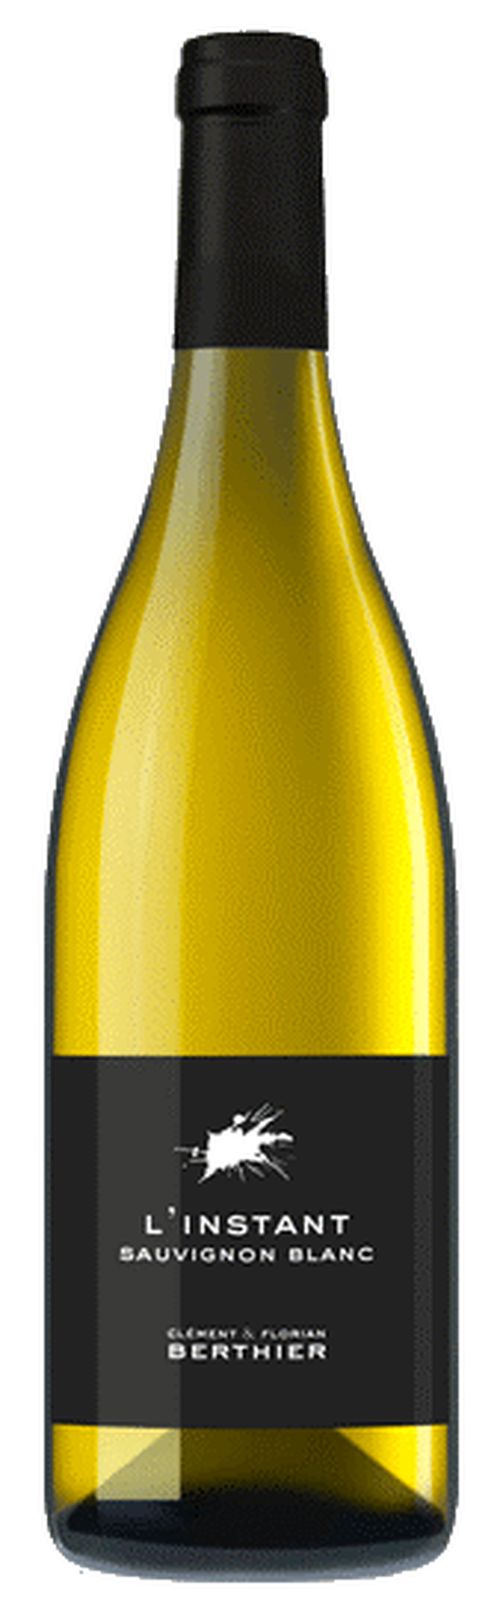 J.M. Berthier L'Instant Sauvignon blanc 2019 0,75l 12,5%